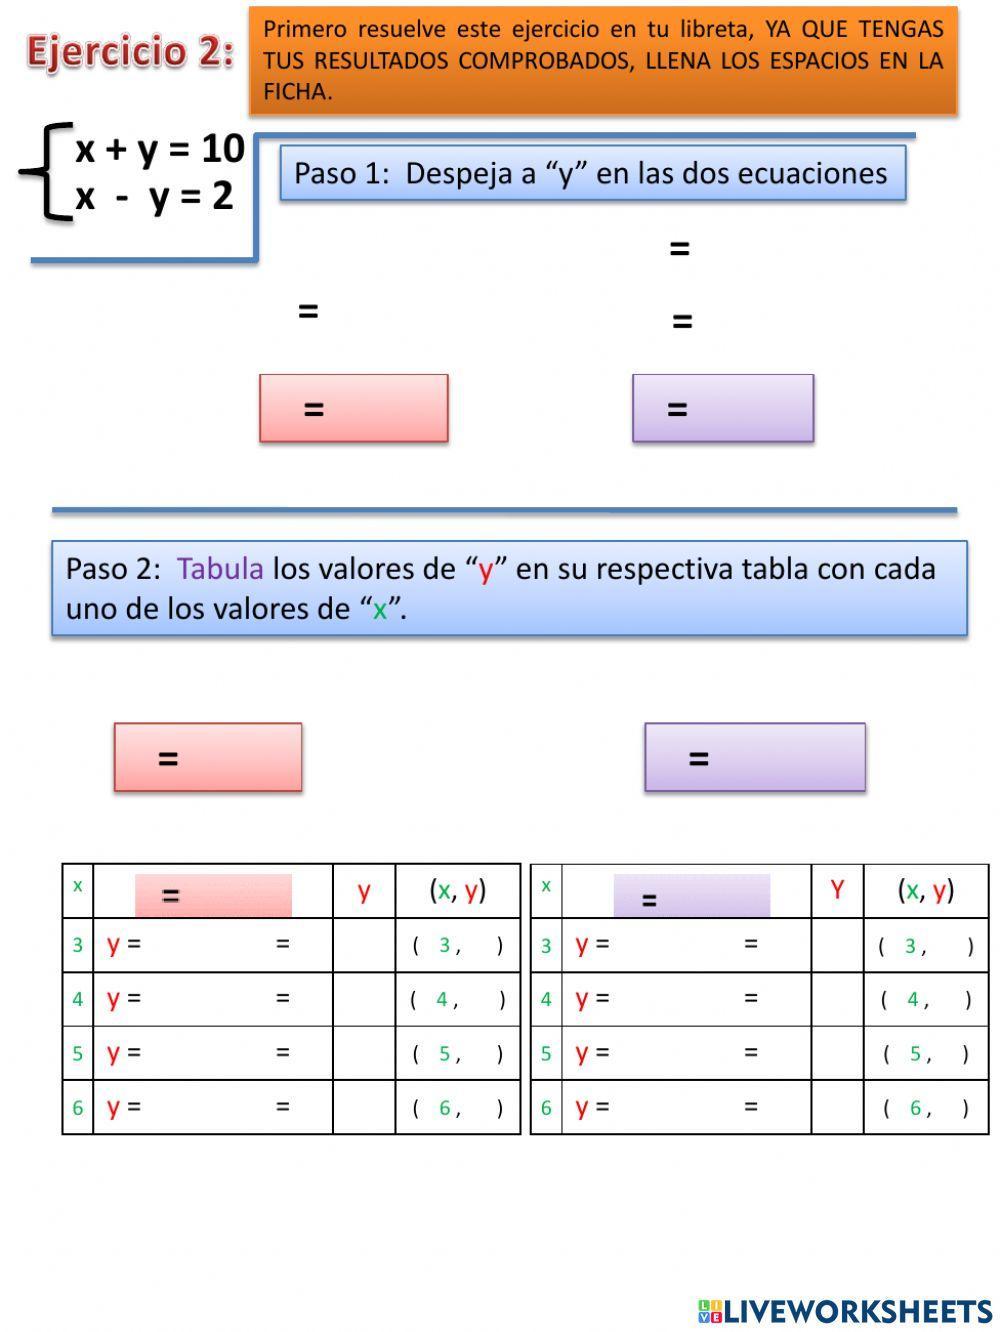 Método Gráfico Sistemas de ecuaciones